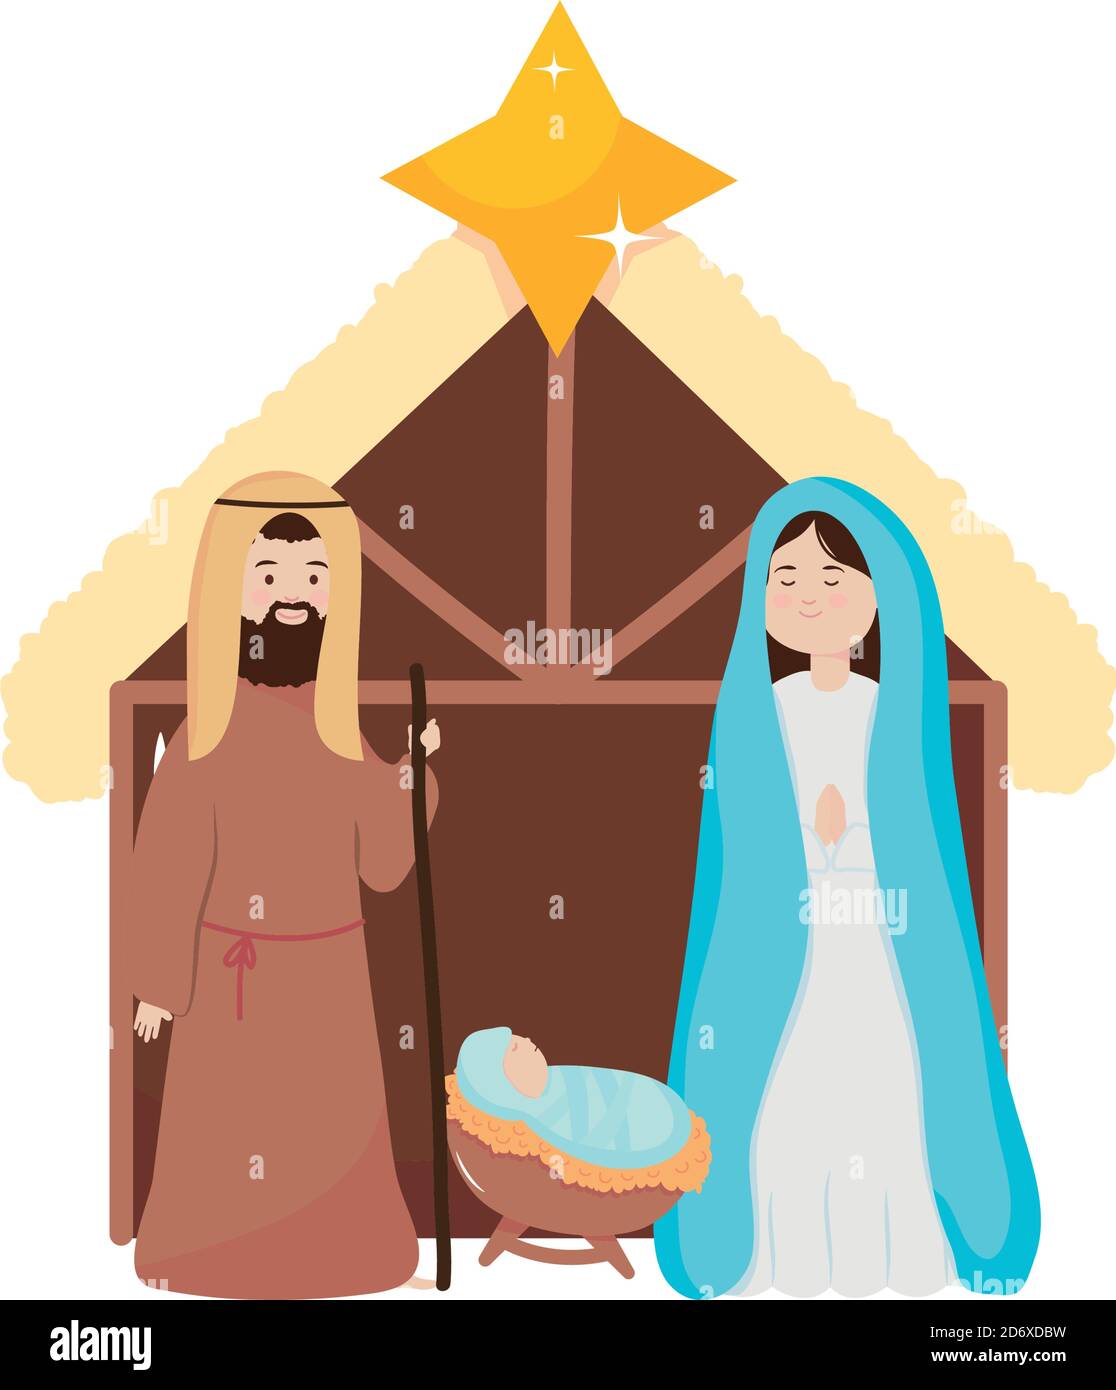 cartoon nativity manger scene icon over white background, flat style ...